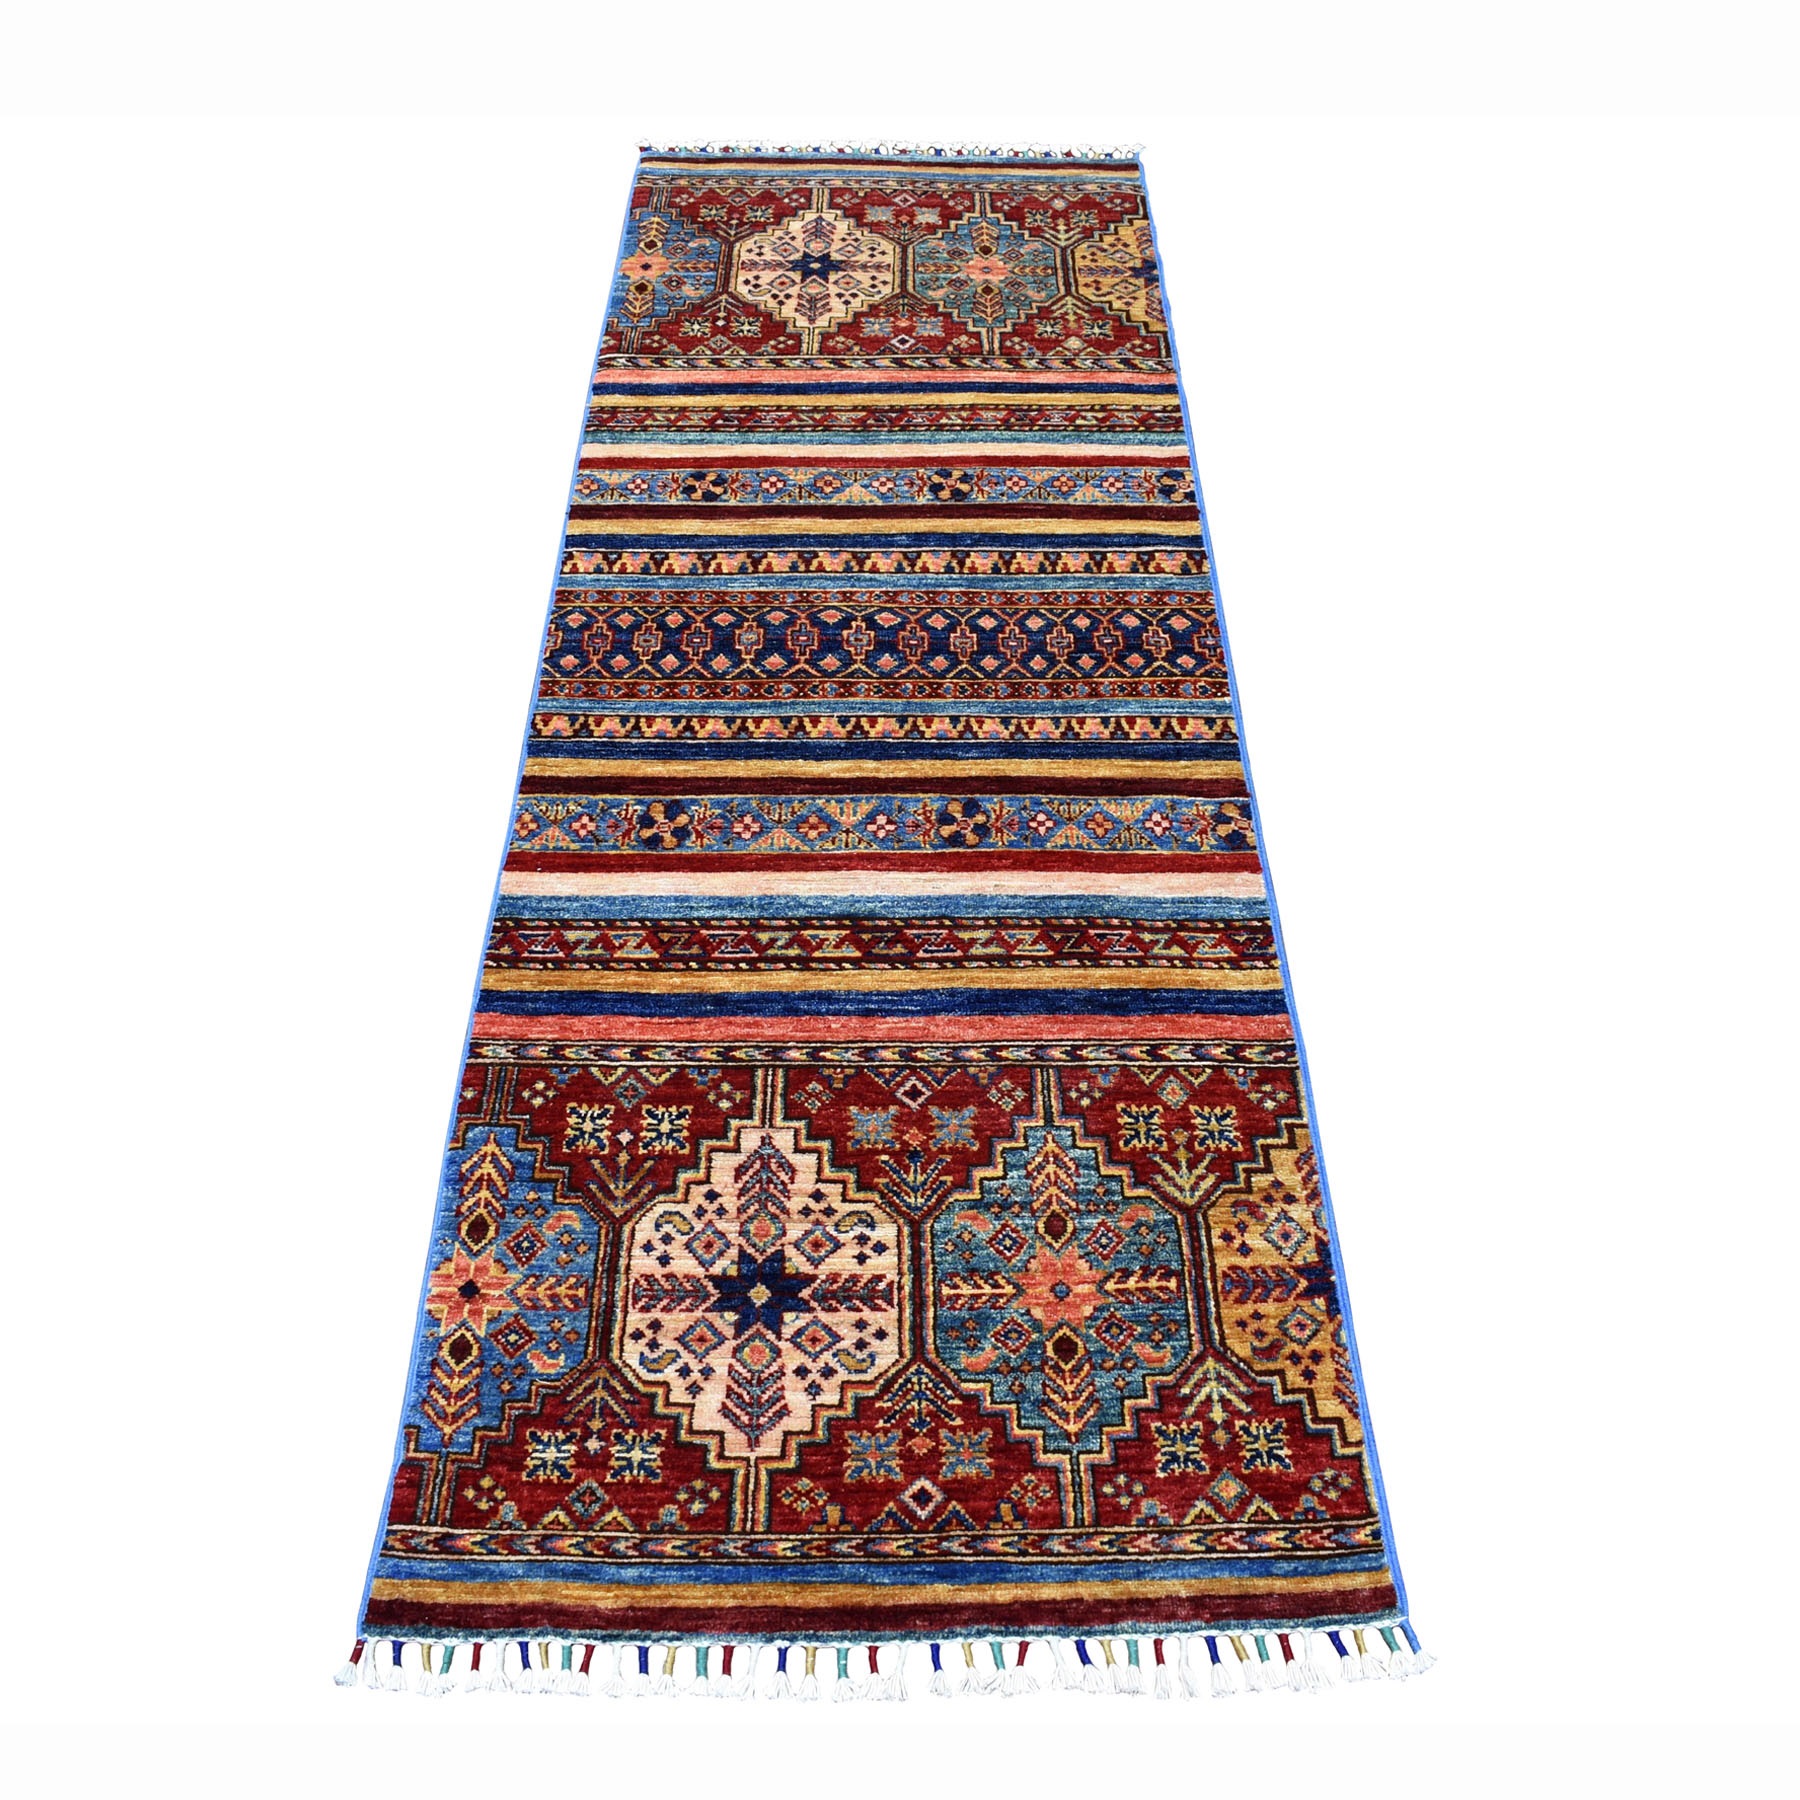 2'5"x7'1" Khorjin Design Runner Blue Super Kazak Geometric Pure Wool Hand Woven Oriental Rug 